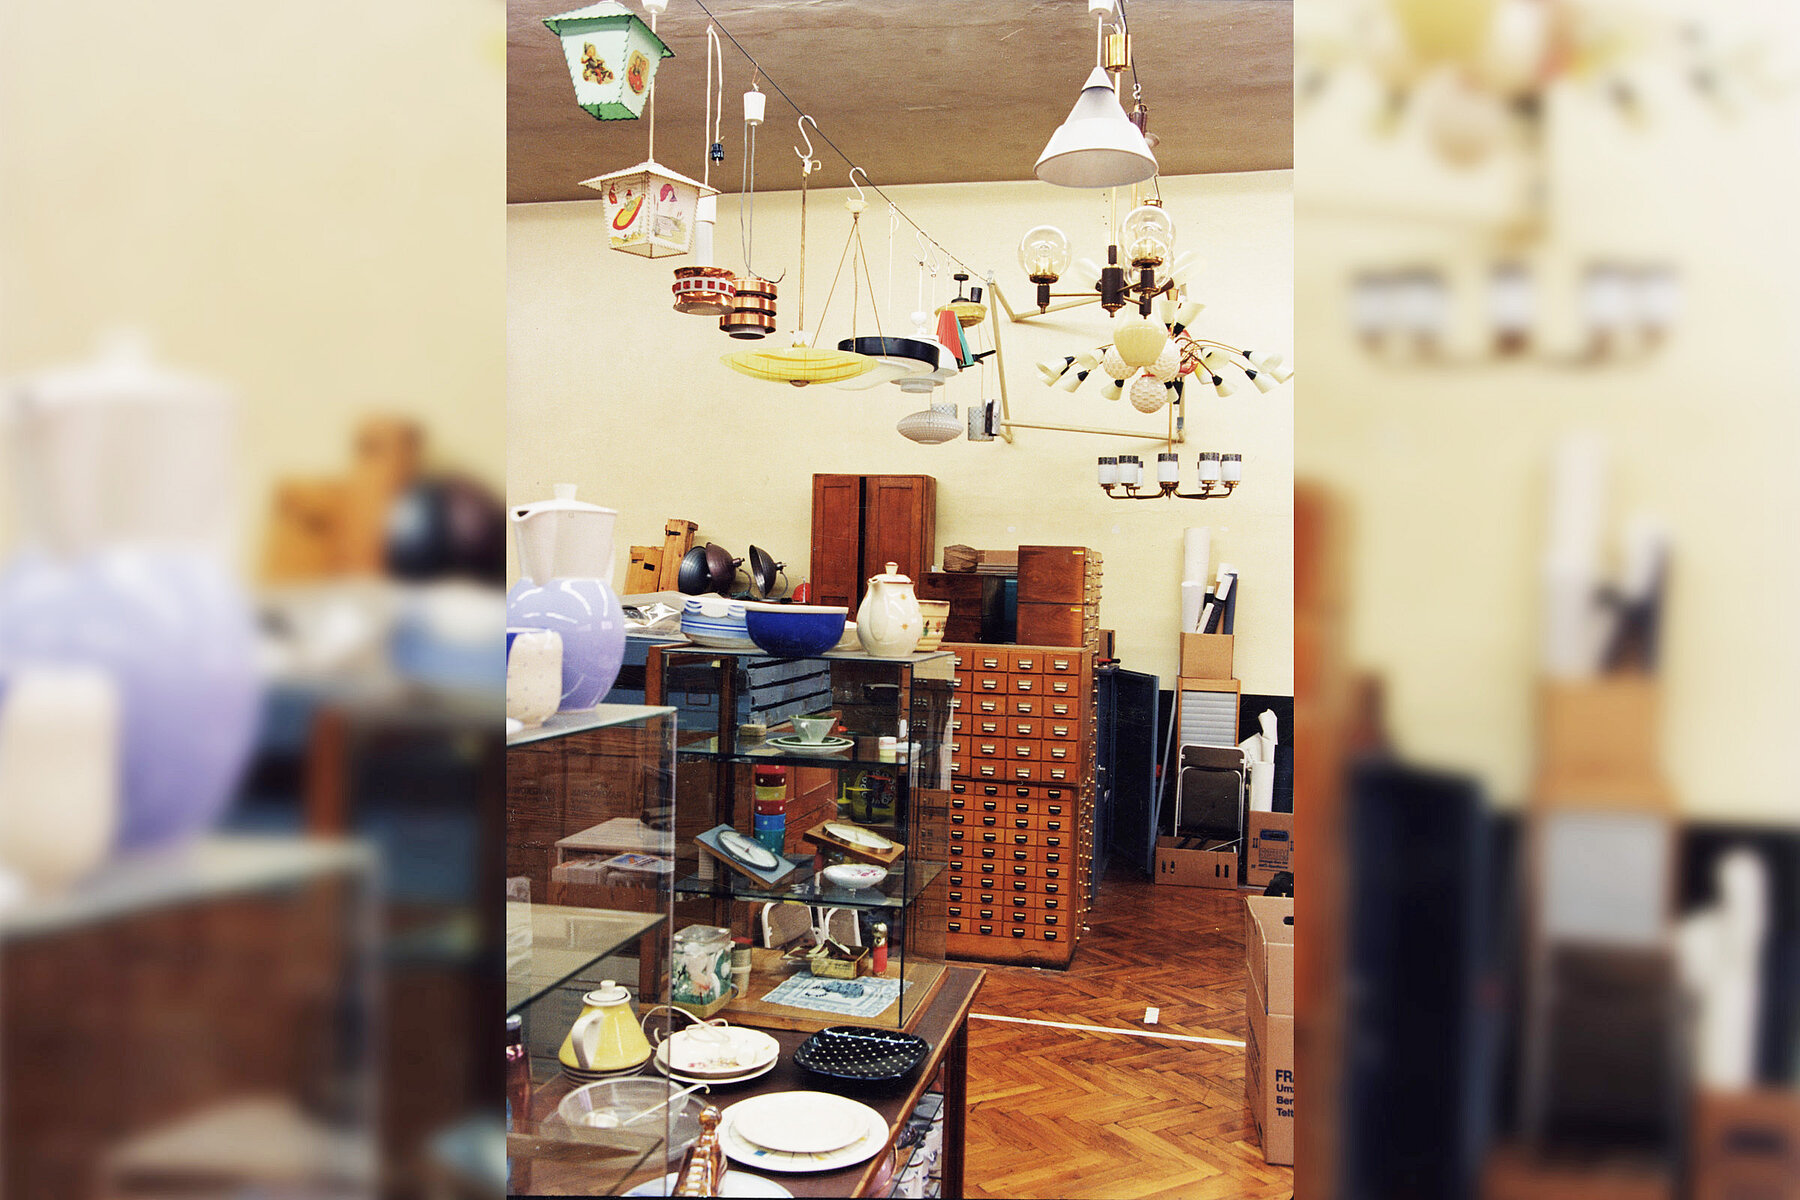 Zeitweiliges Depot der Sammlung industrielle Gestaltung. Diverse Objekte der Designsammlung, wie Lampen, Teller und Schränke befinden sich in einem Raum.